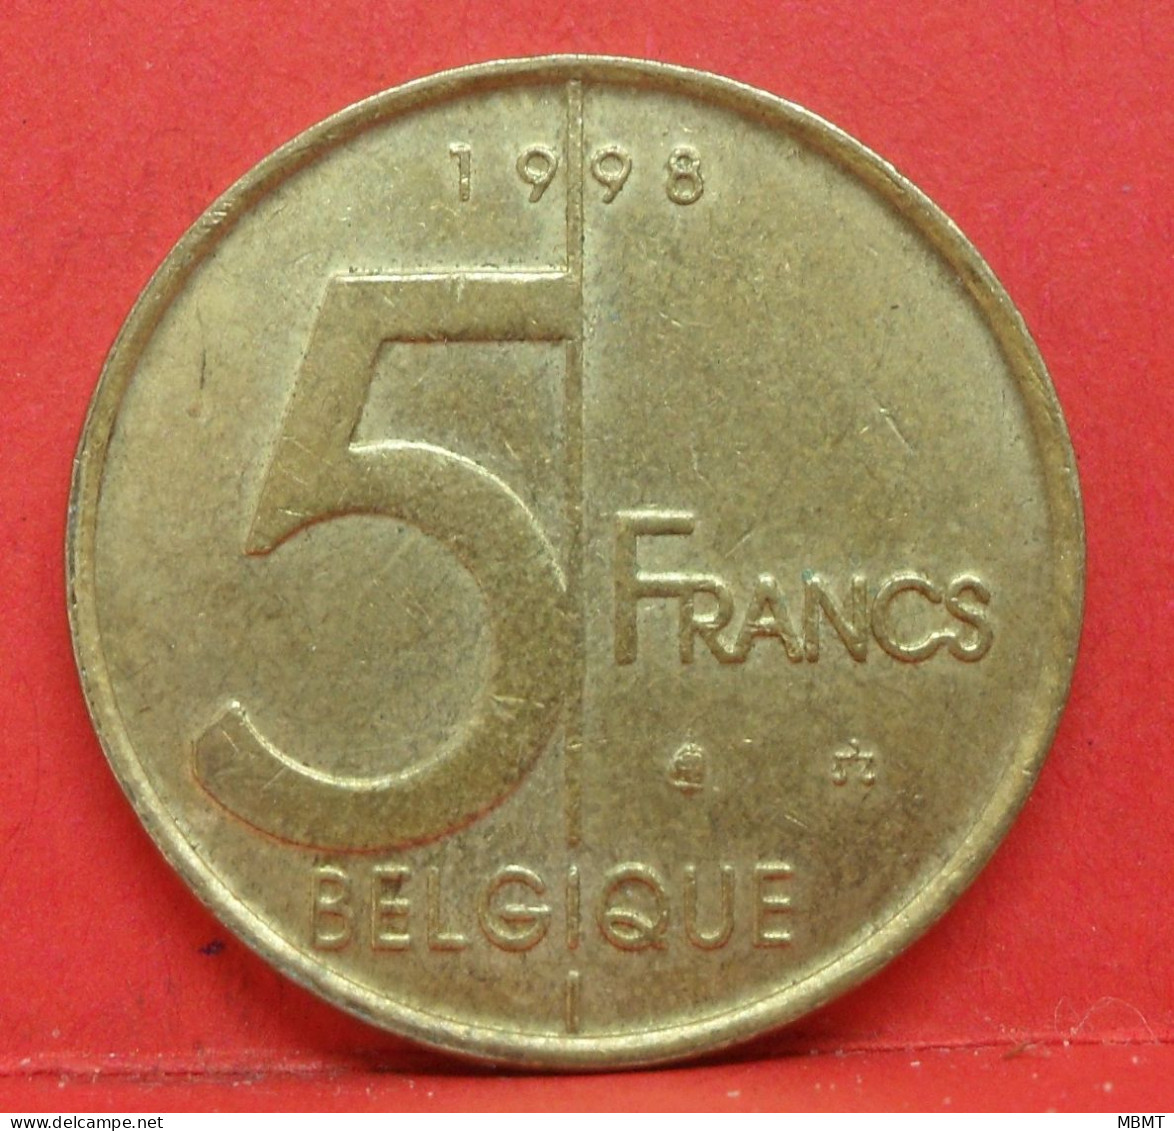 5 Francs 1998 - TTB - Pièce Monnaie Belgique - Article N°1836 - 5 Francs